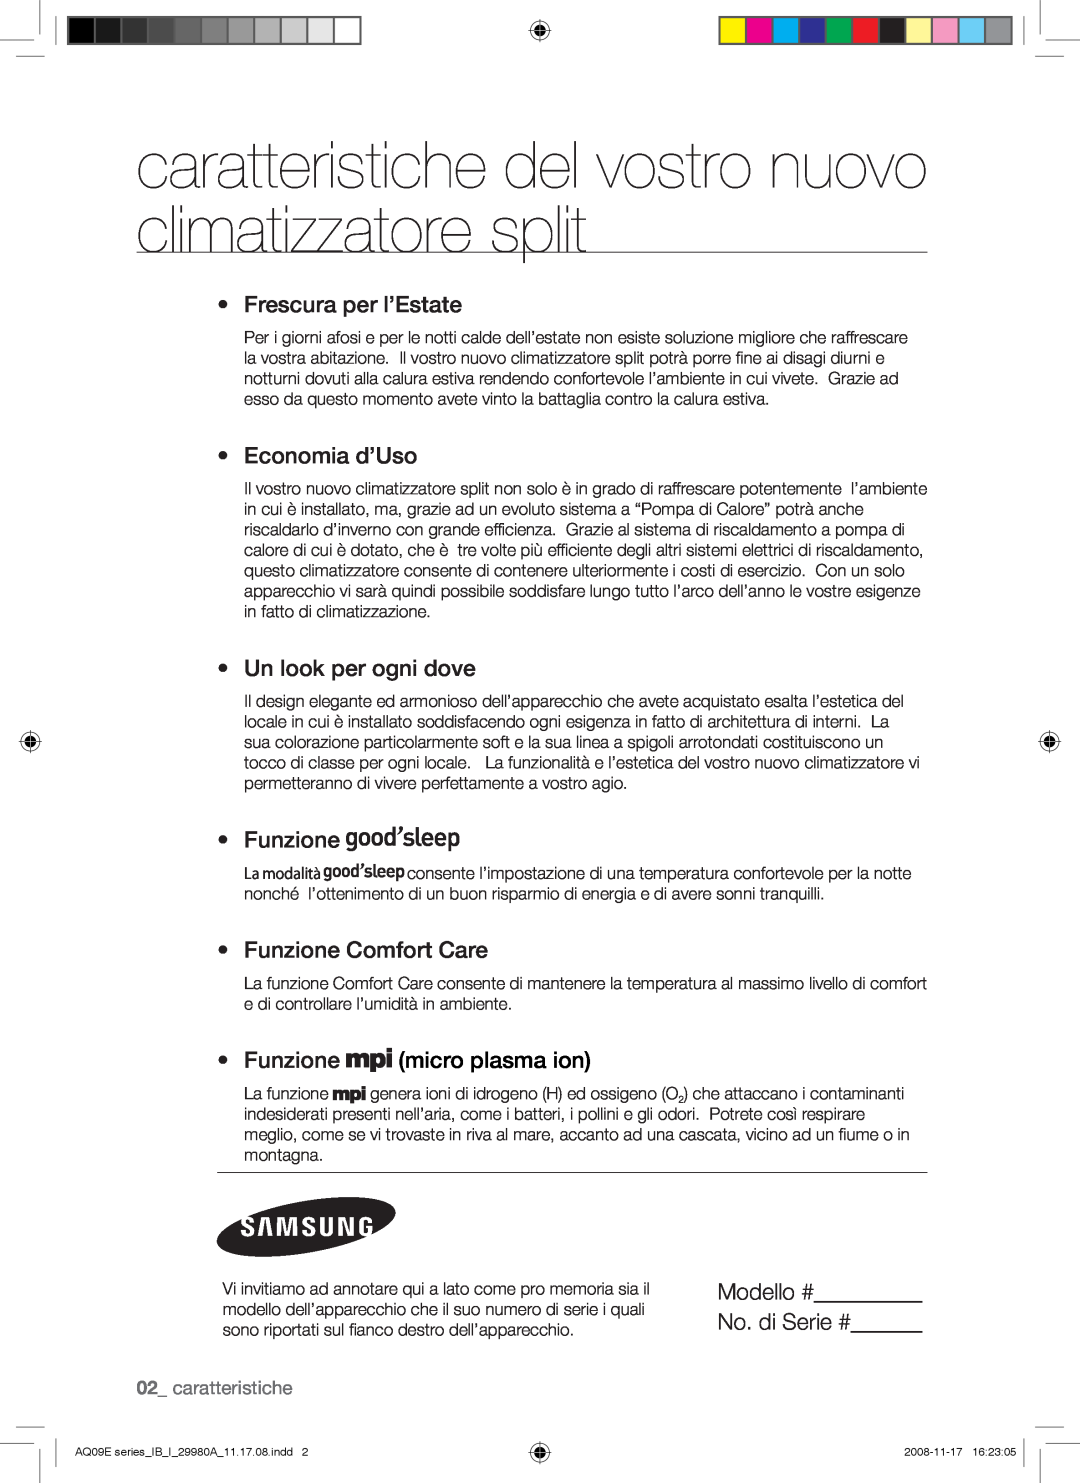 Samsung AQV09EWAX caratteristiche del vostro nuovo climatizzatore split, Frescura per l’Estate, Economia d’Uso, Funzione 